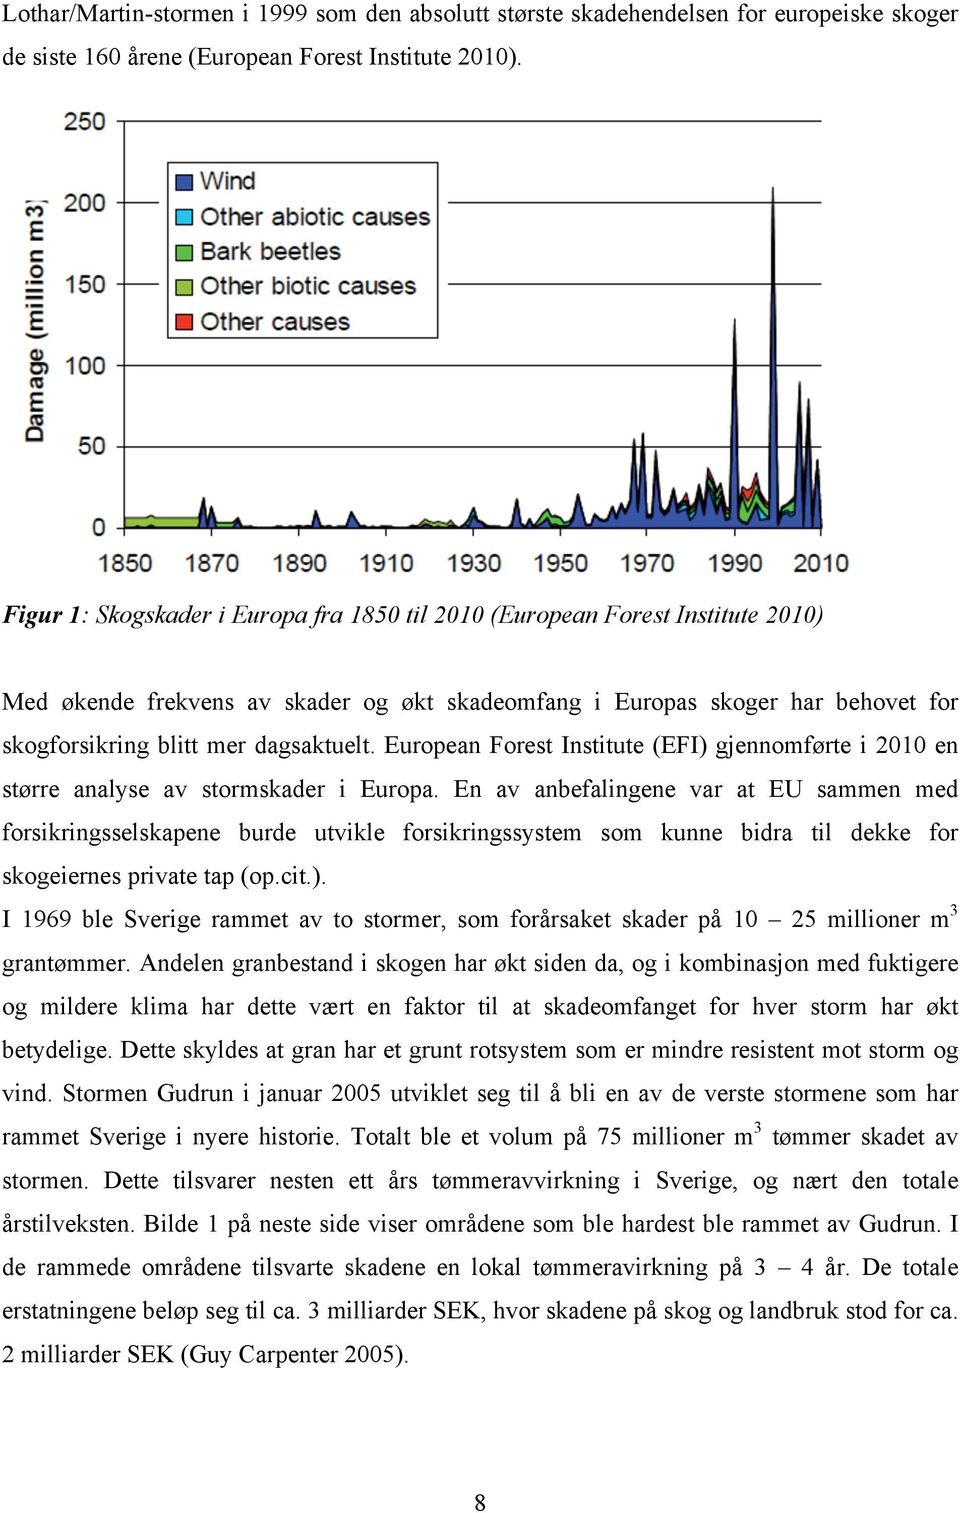 Lenger syd i Europa har stormene Lothar/Martin (1999) og Klaus (2009) vært katastrofer av stor betydning for Europas skoger.